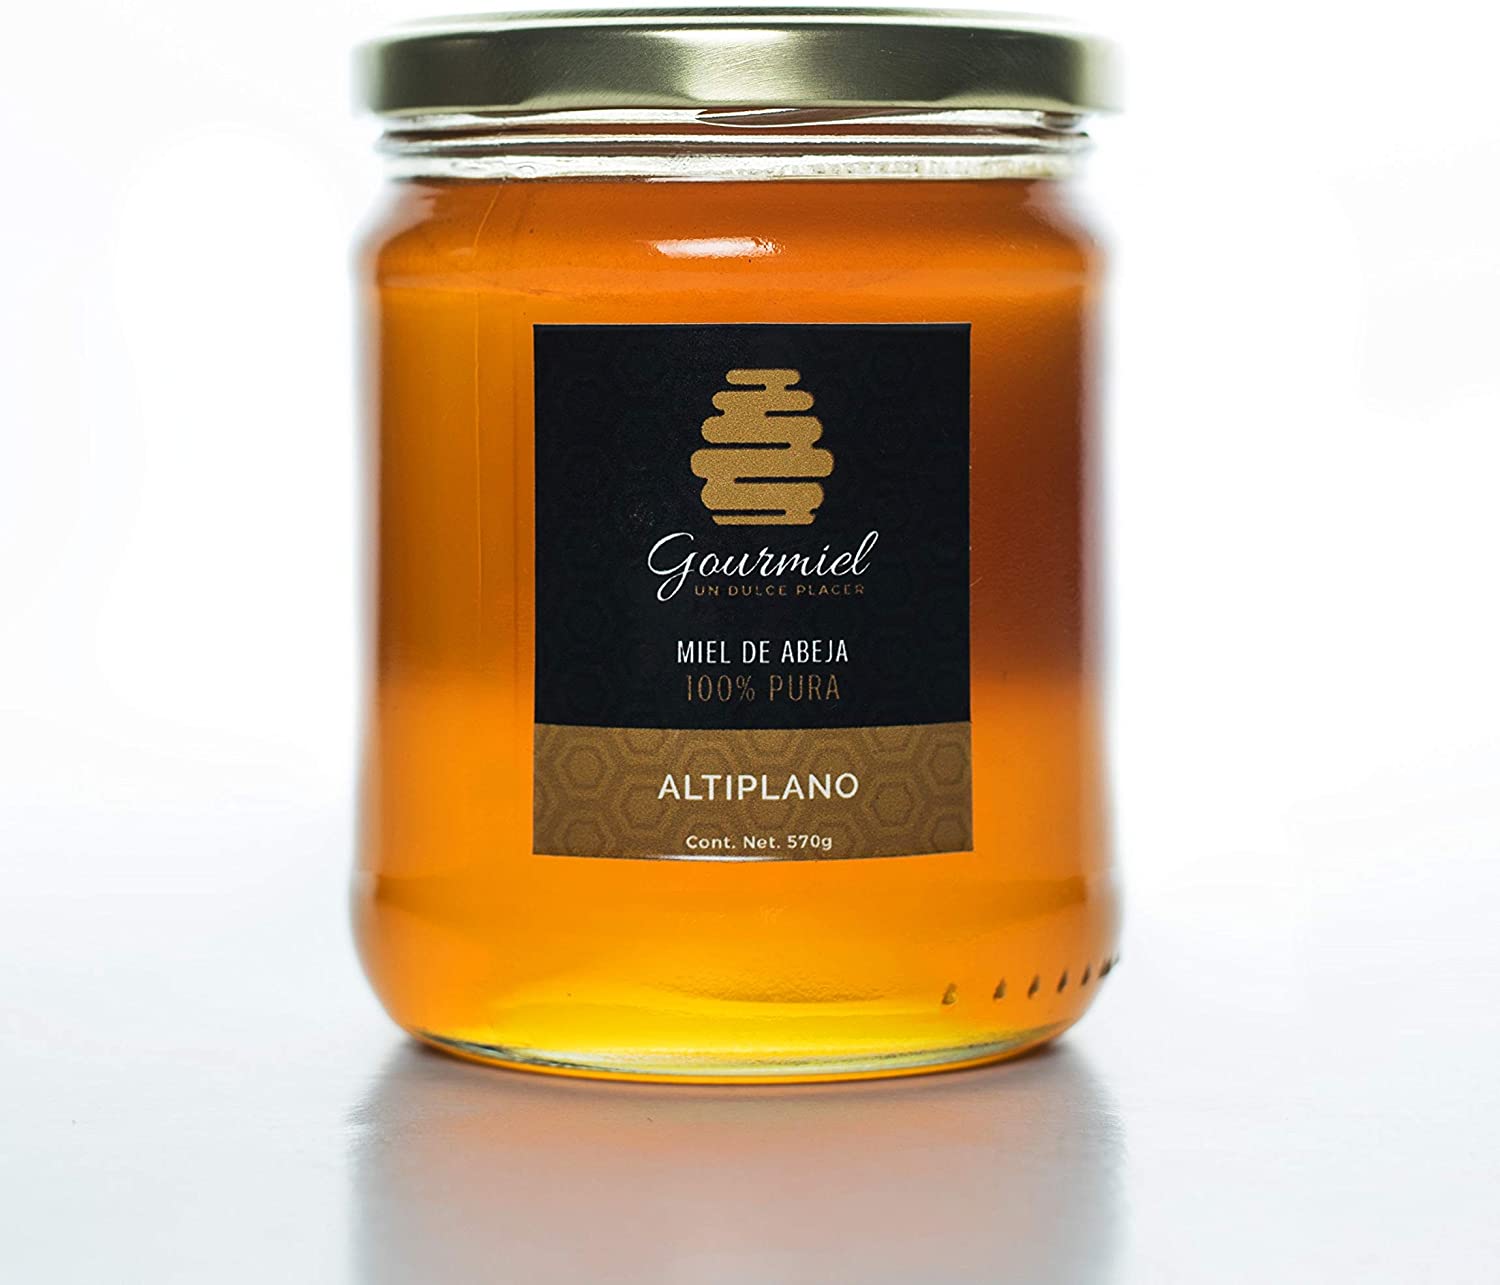 Miel de abeja tipo mantequilla 100% pura, 600 gms | granja-la-noria